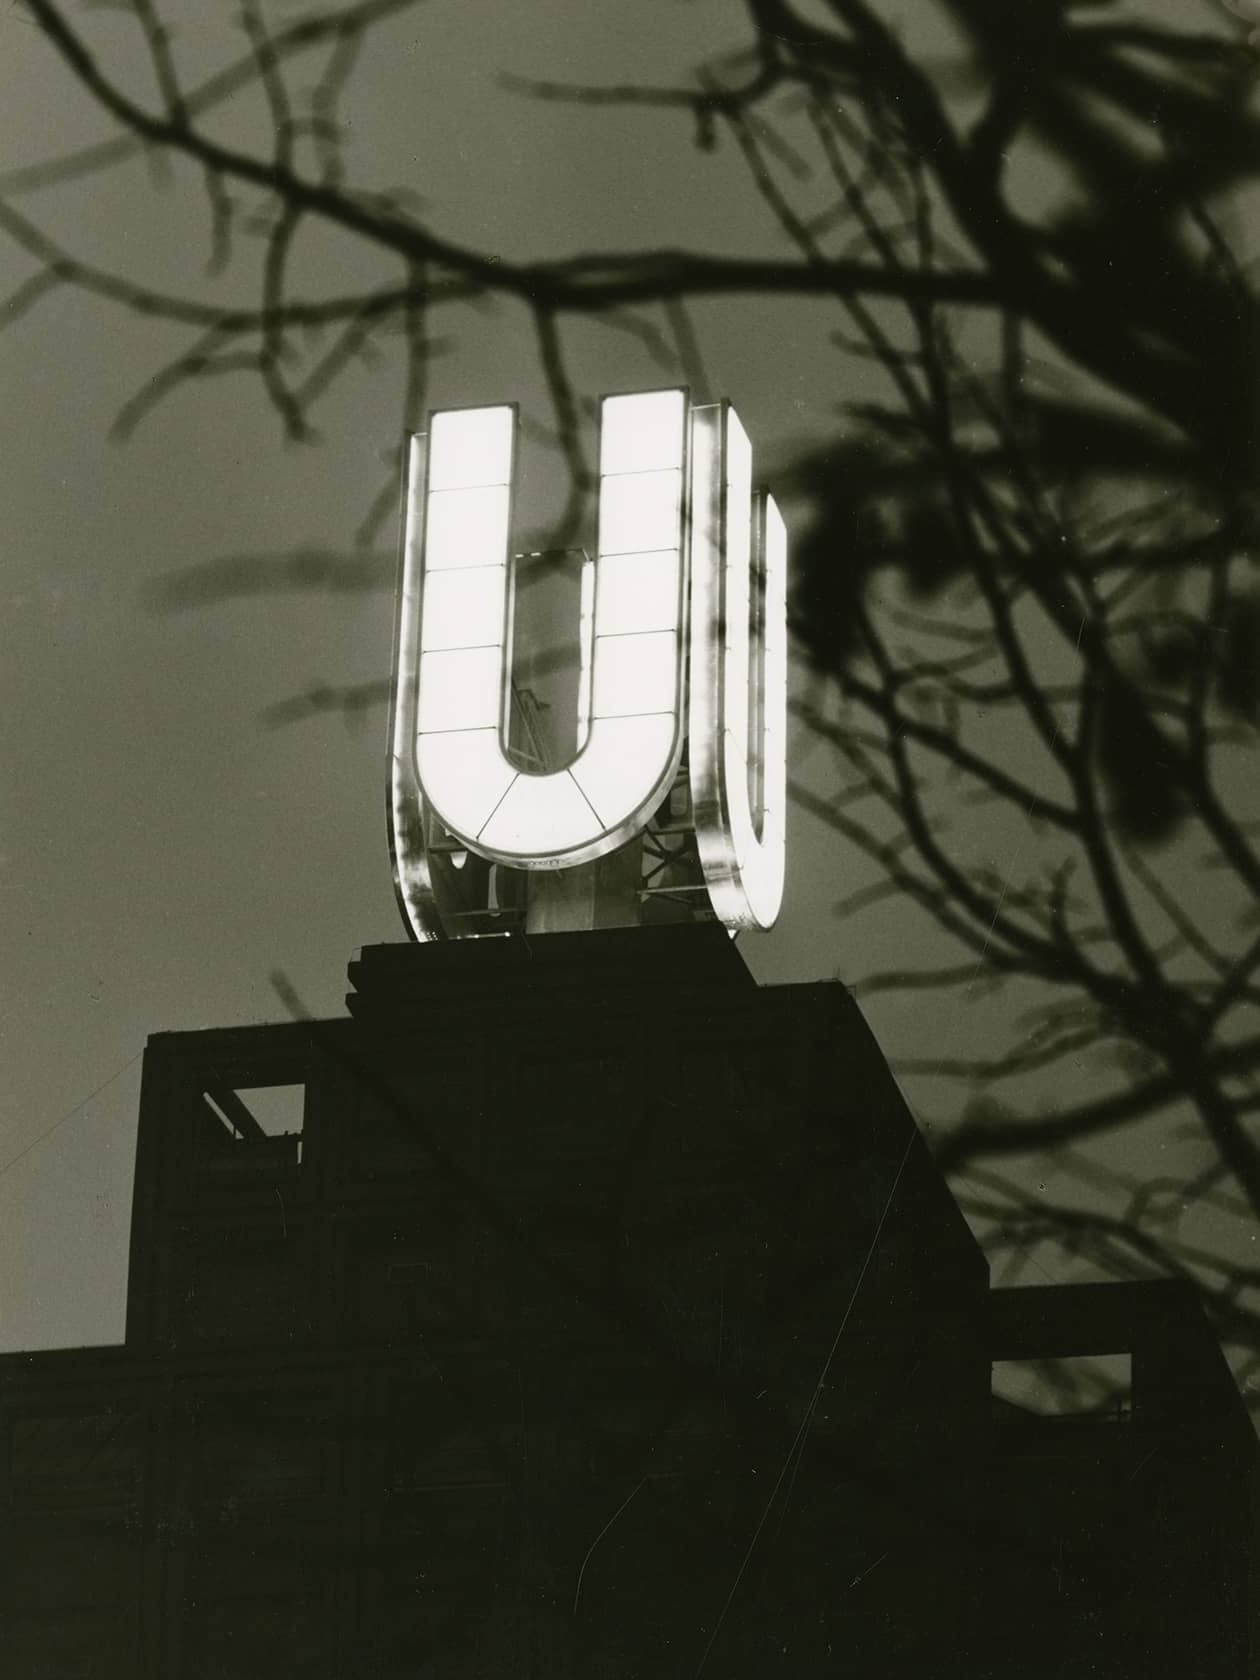 Leuchtreklame “U”, Dortmund, 1968